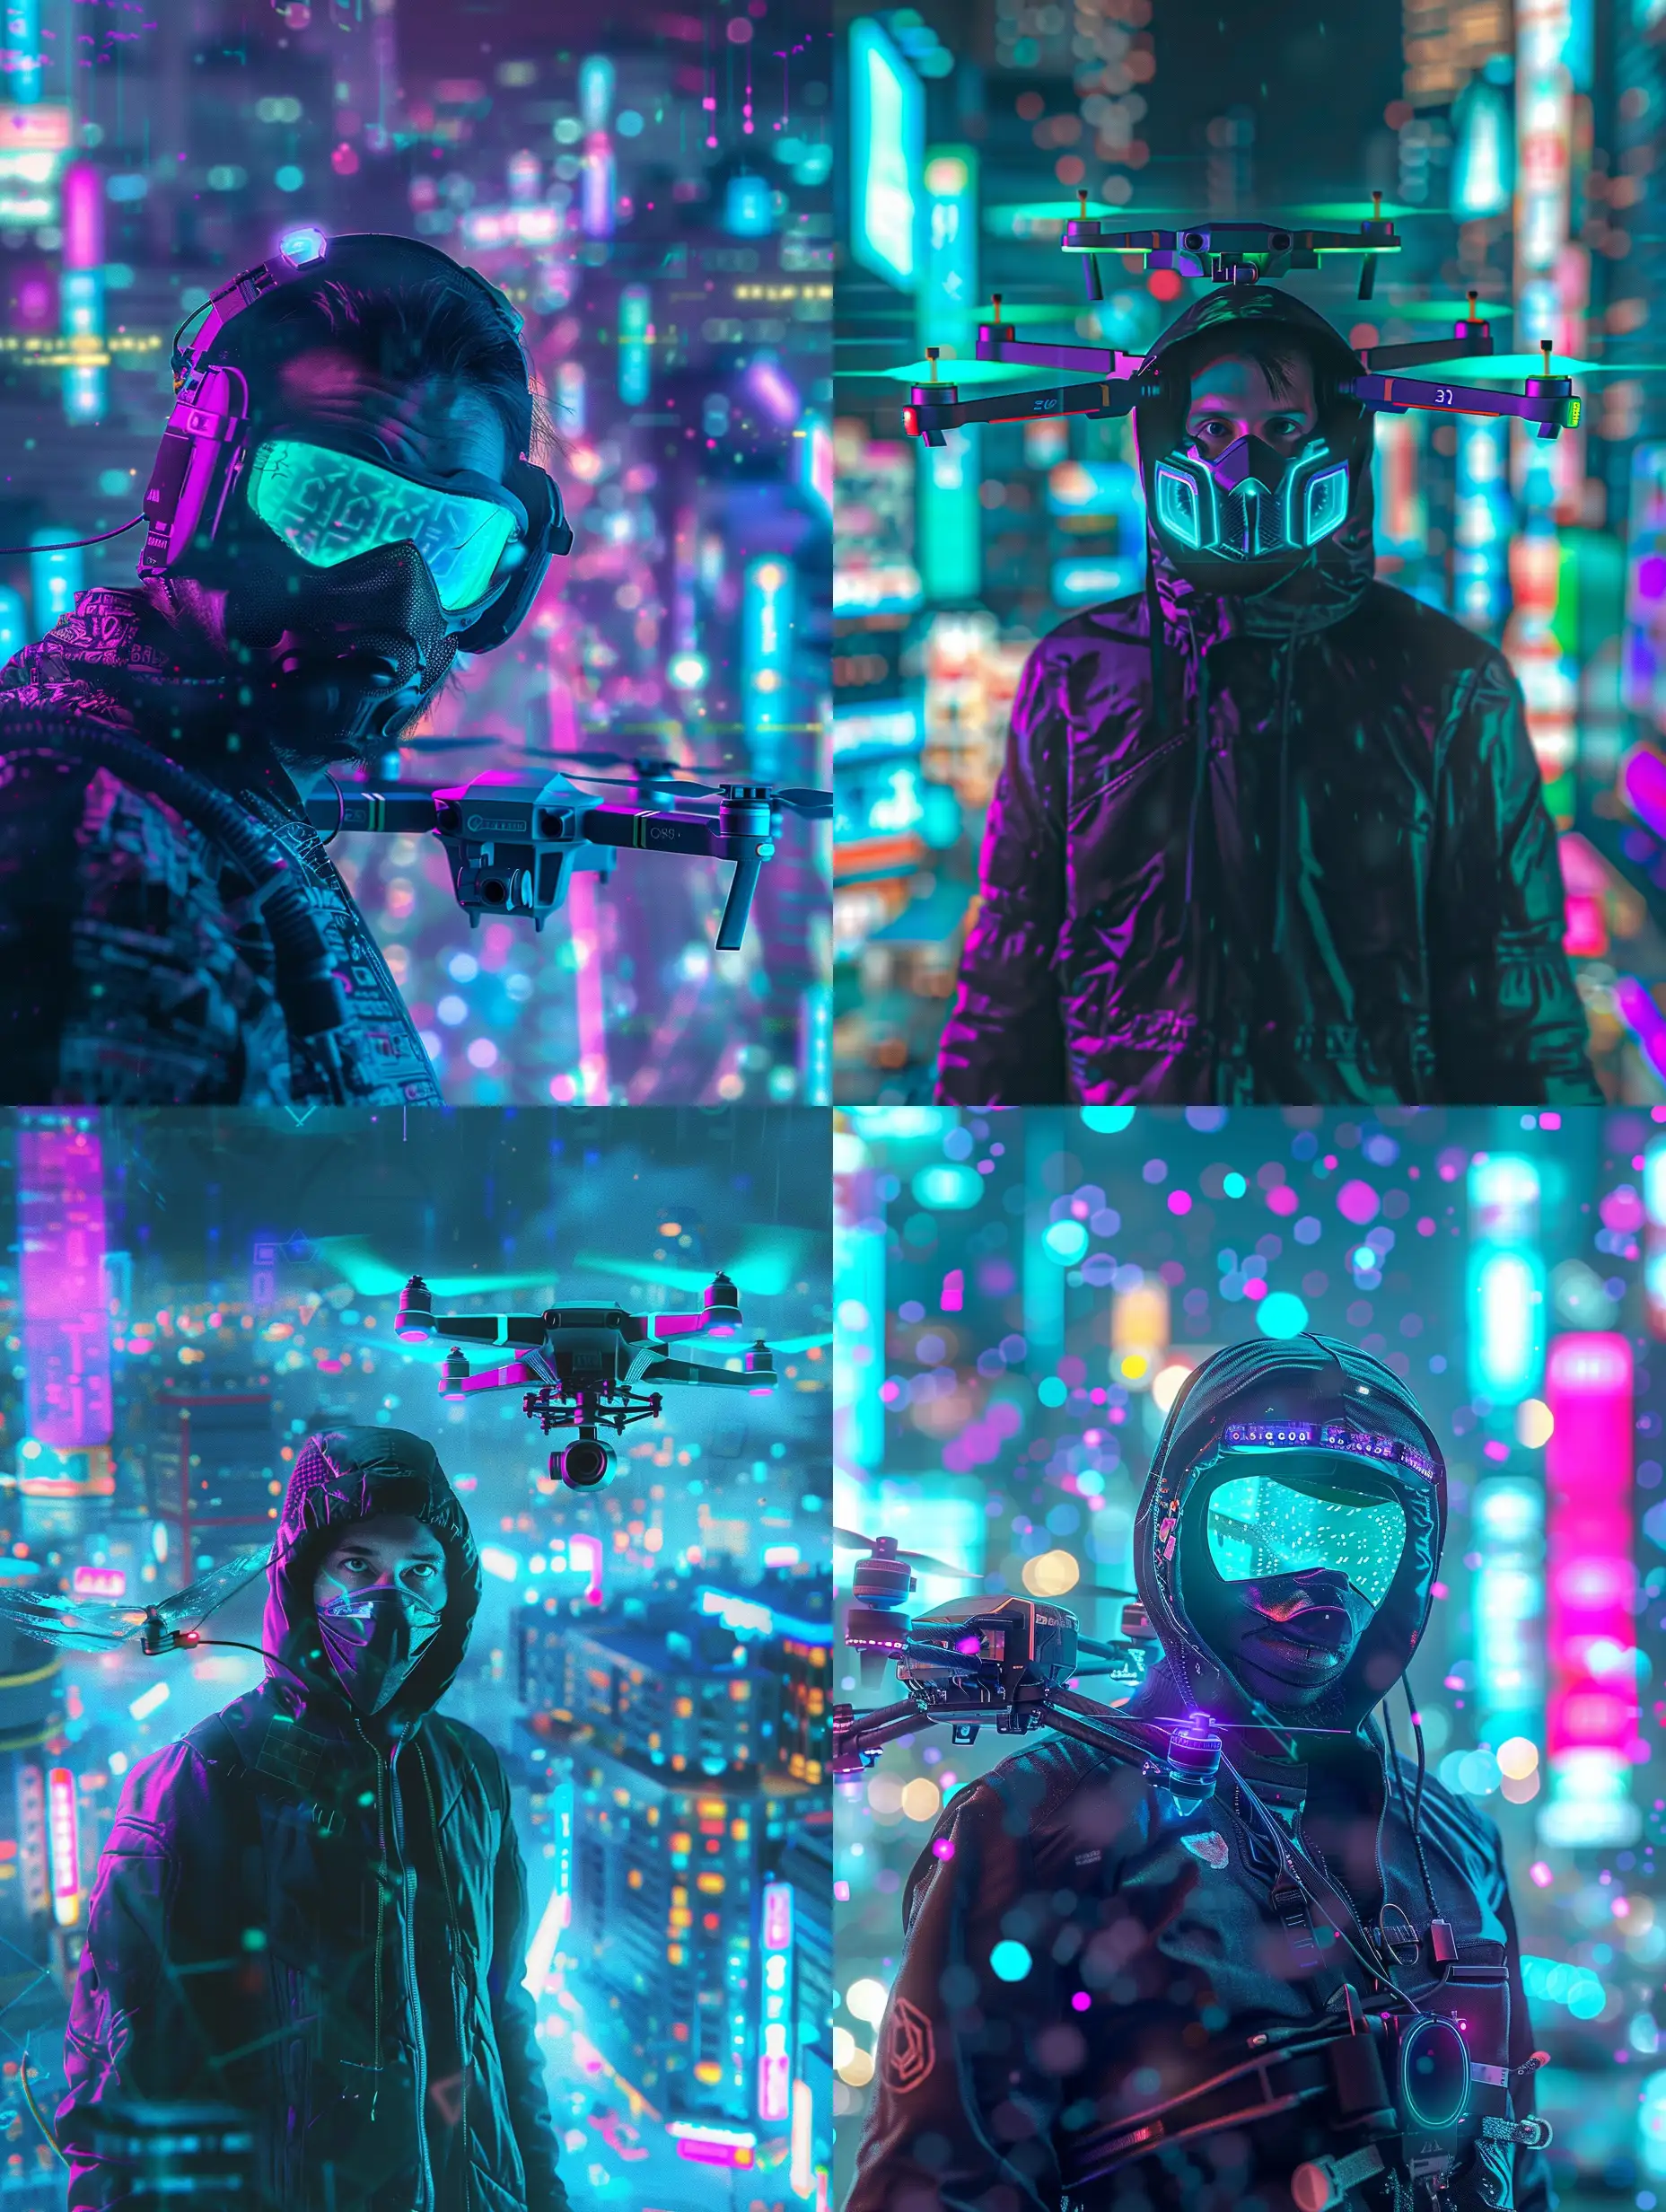 homme hacker portant un masque avec un drone  avec des lumiere turquoise et violet .. ville neotokyo derrière . 25 % anime , 75 % realiste 